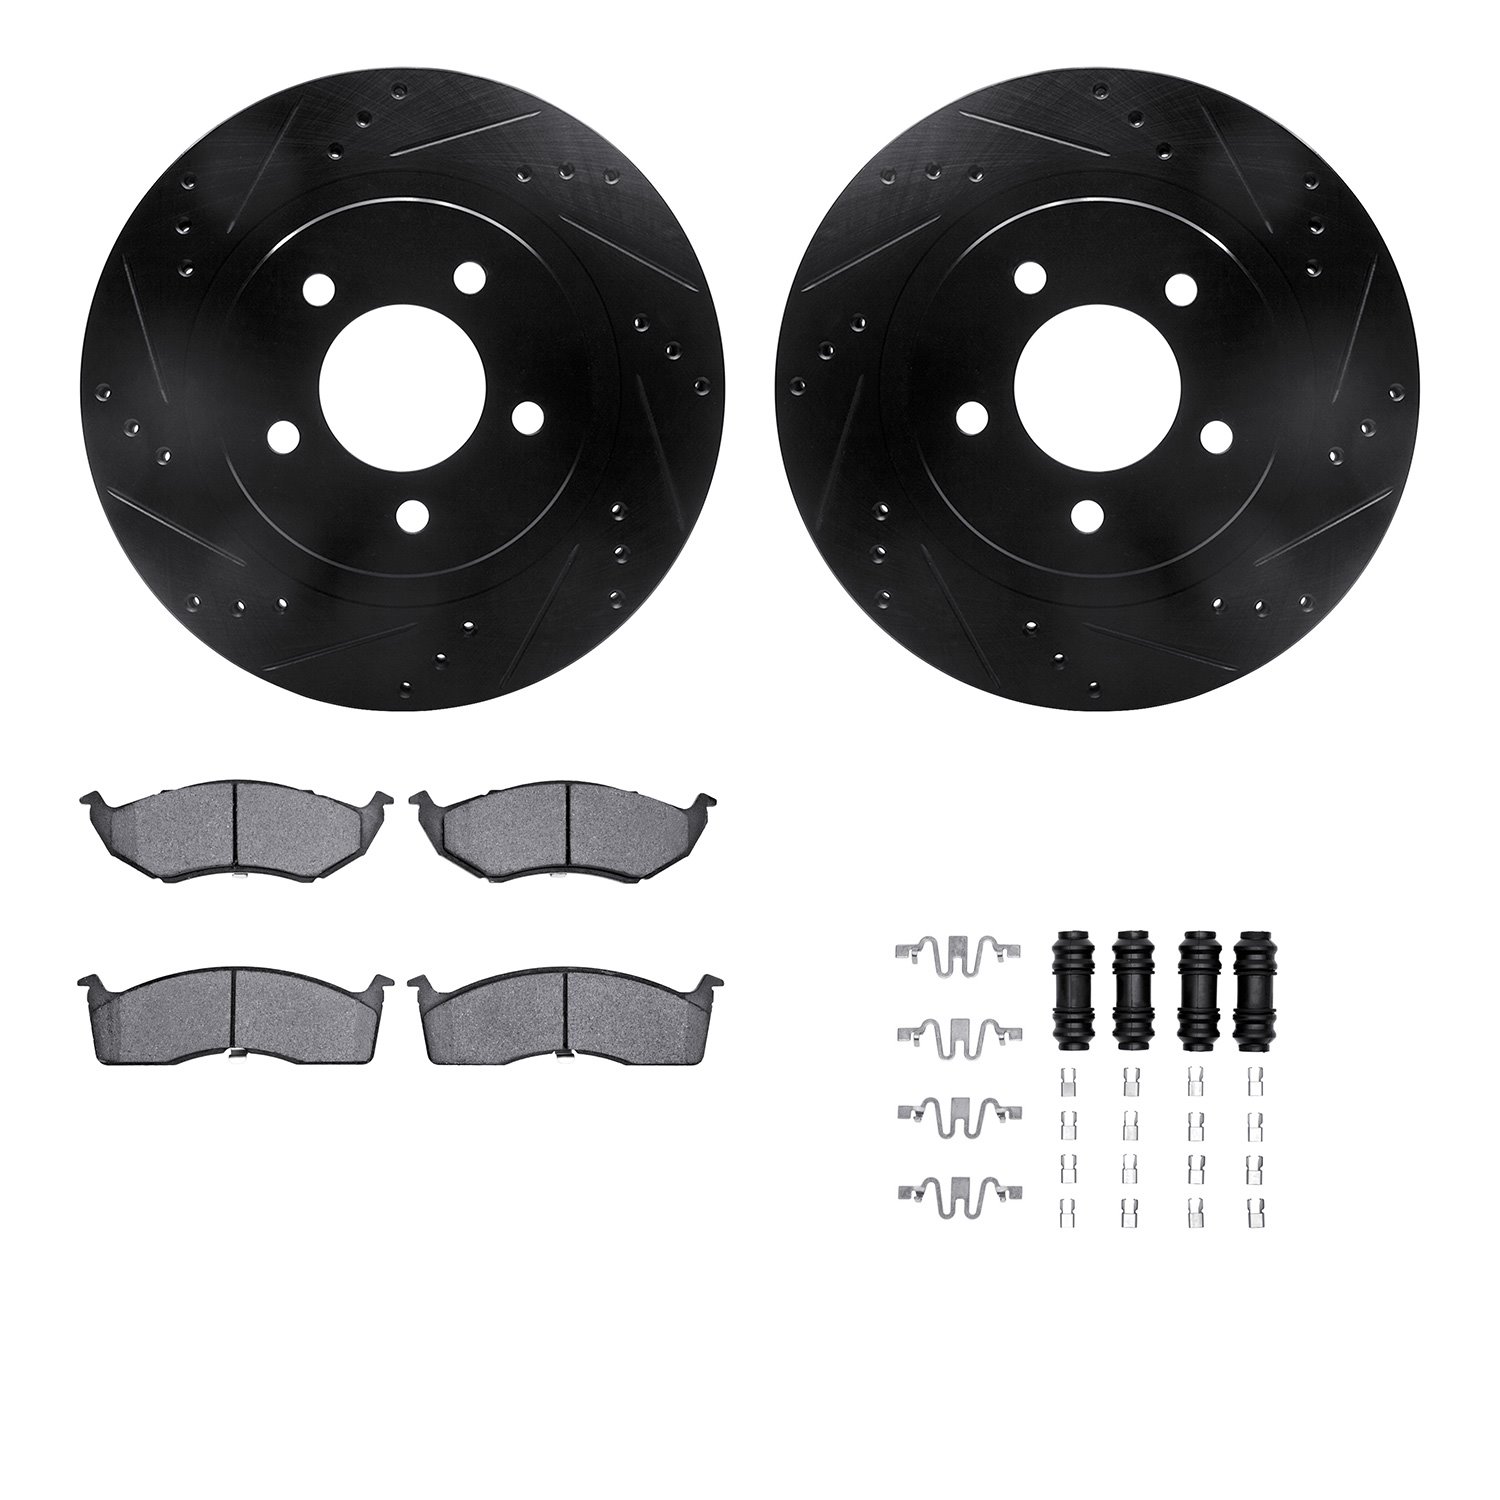 8512-40023 Drilled/Slotted Brake Rotors w/5000 Advanced Brake Pads Kit & Hardware [Black], 1998-2004 Mopar, Position: Front